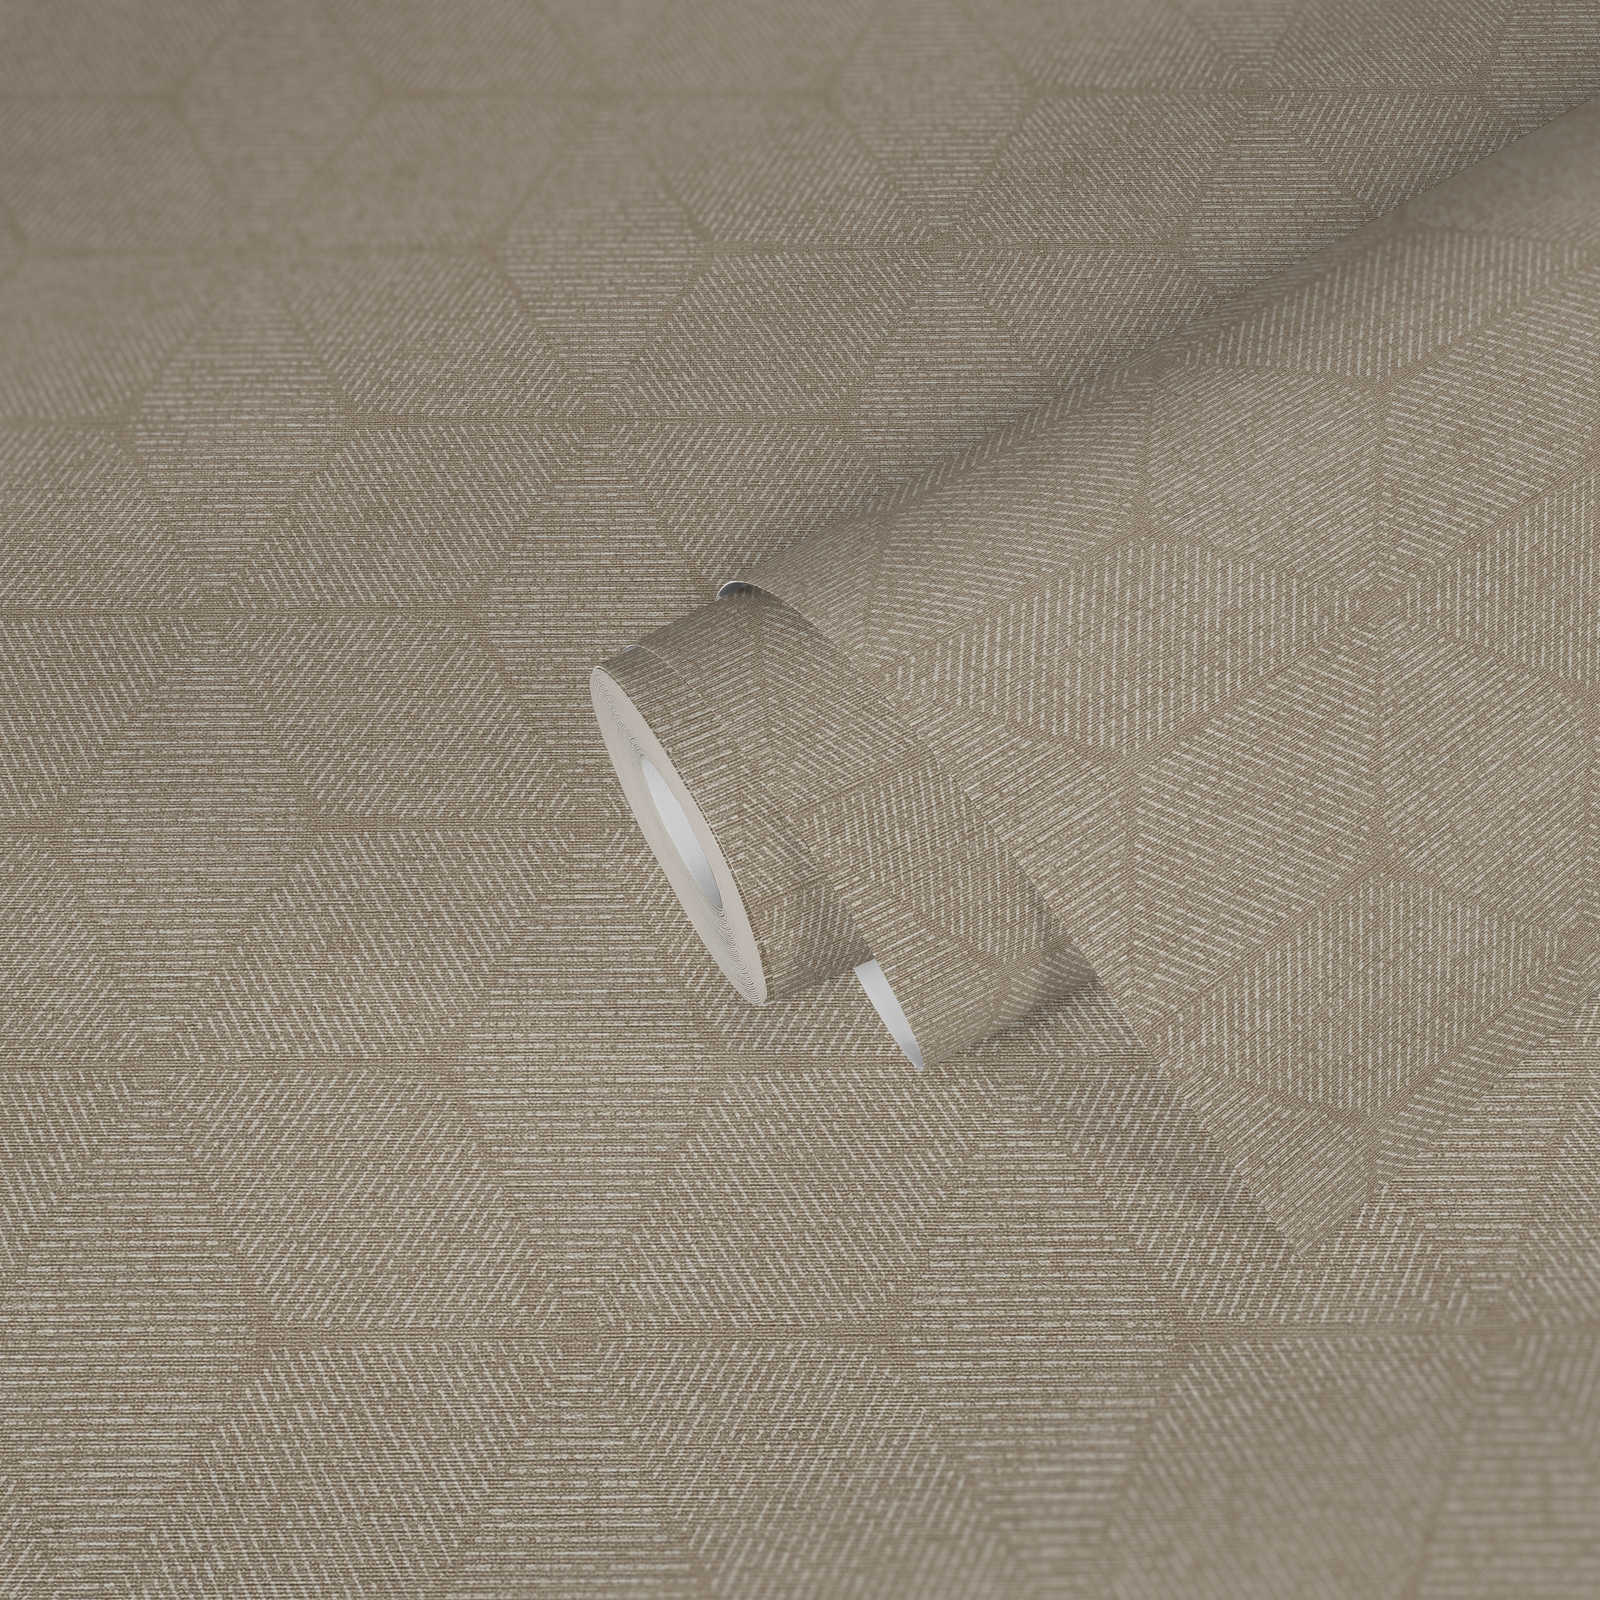             Papel pintado no tejido en estilo natural - beige, blanco
        